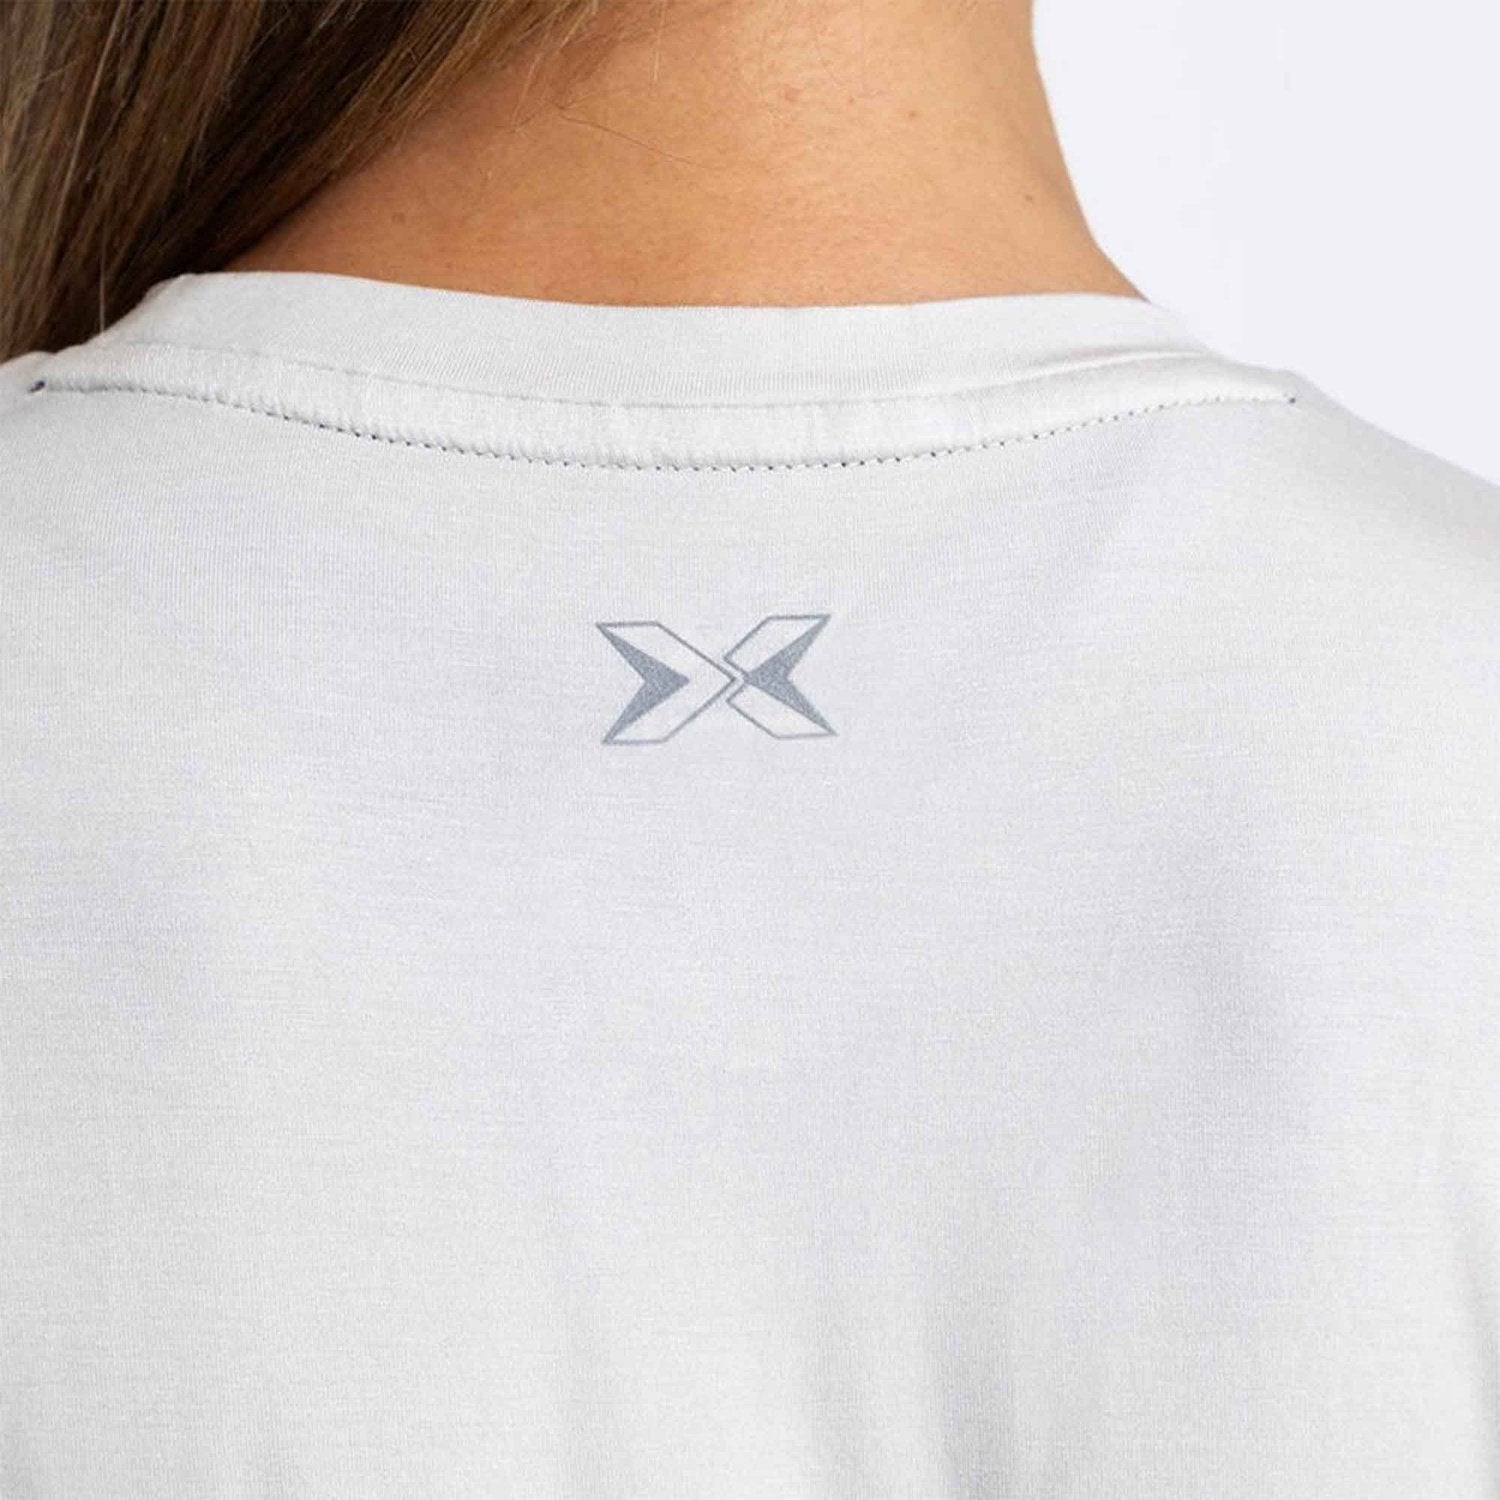 PicSil Damen Sport T-Shirt (Tee Core 0.2) Beige kaufen bei HighPowered.ch